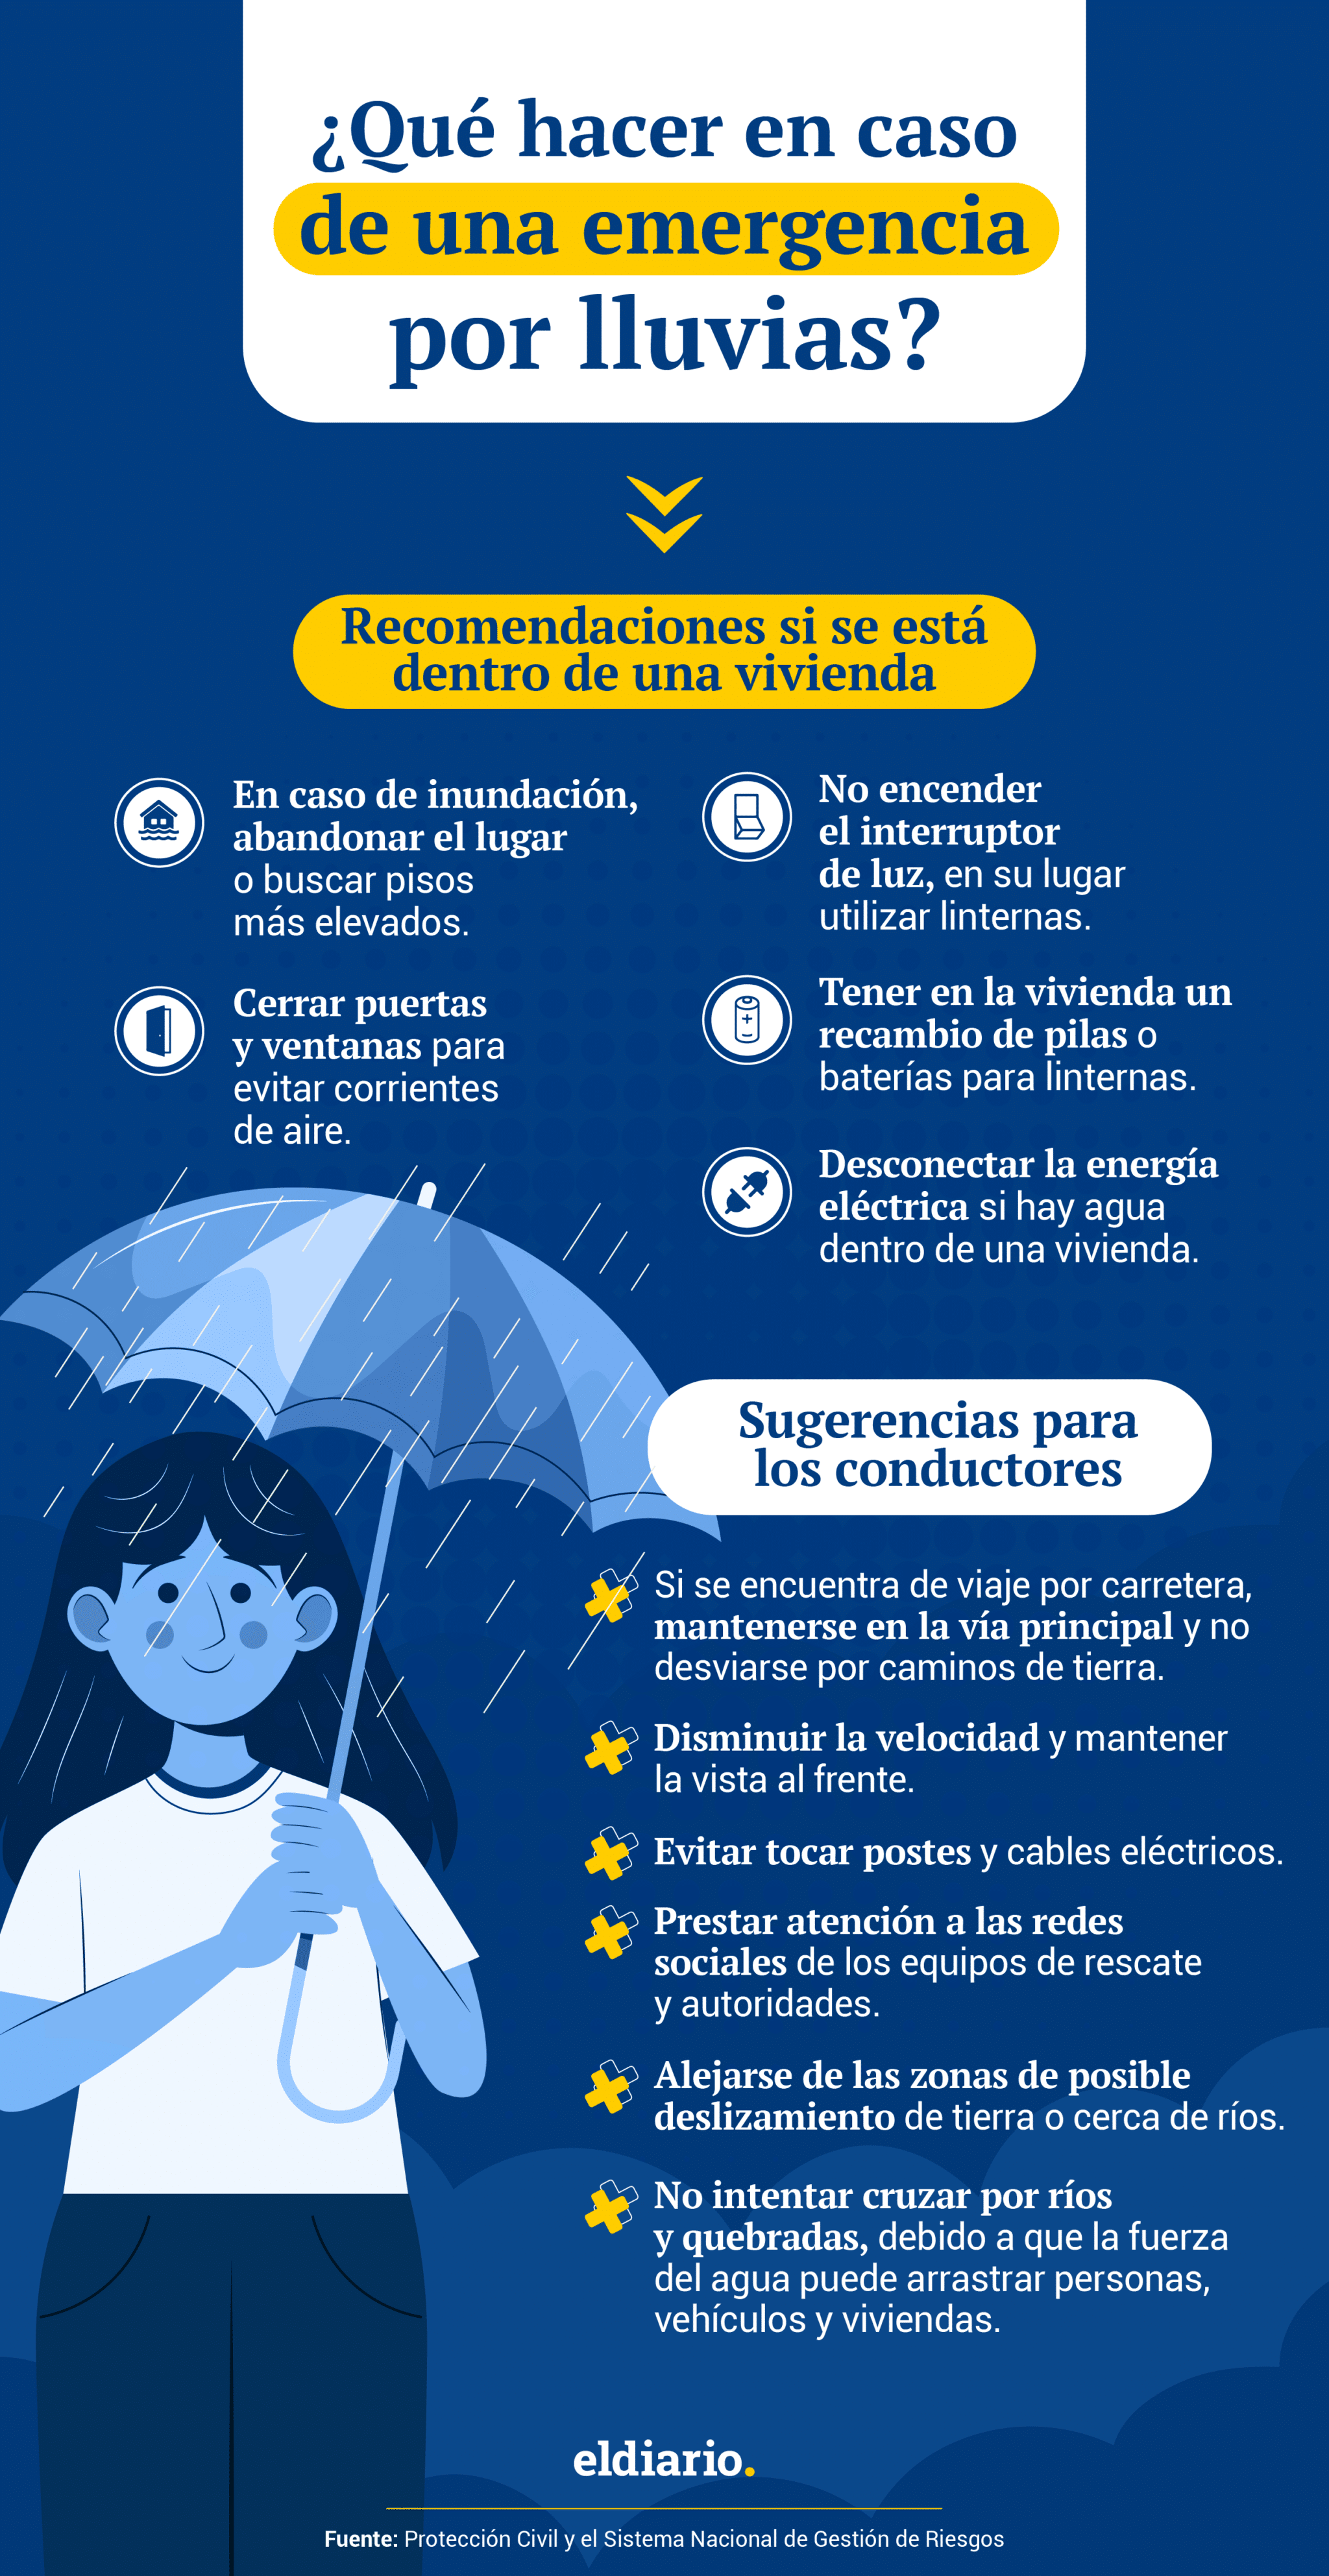 ¿Qué hacer en caso de una emergencia por lluvias y a dónde comunicarse?